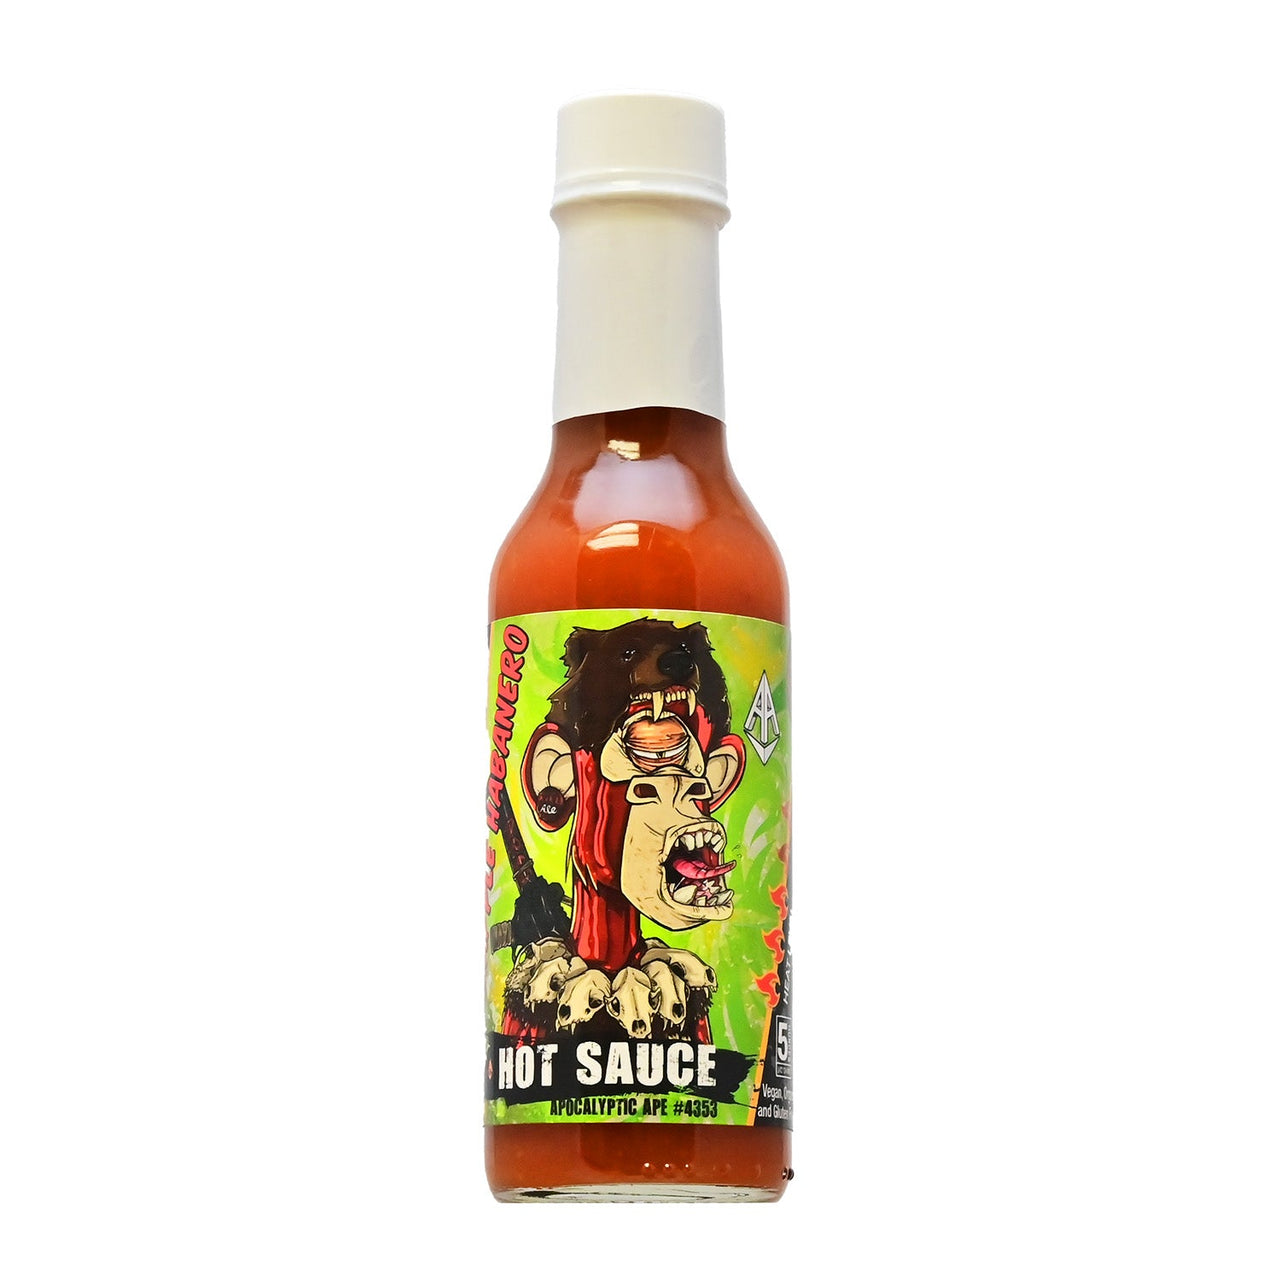 Apocalyptic Ape #4353 Pineapple Habanero Hot Sauce